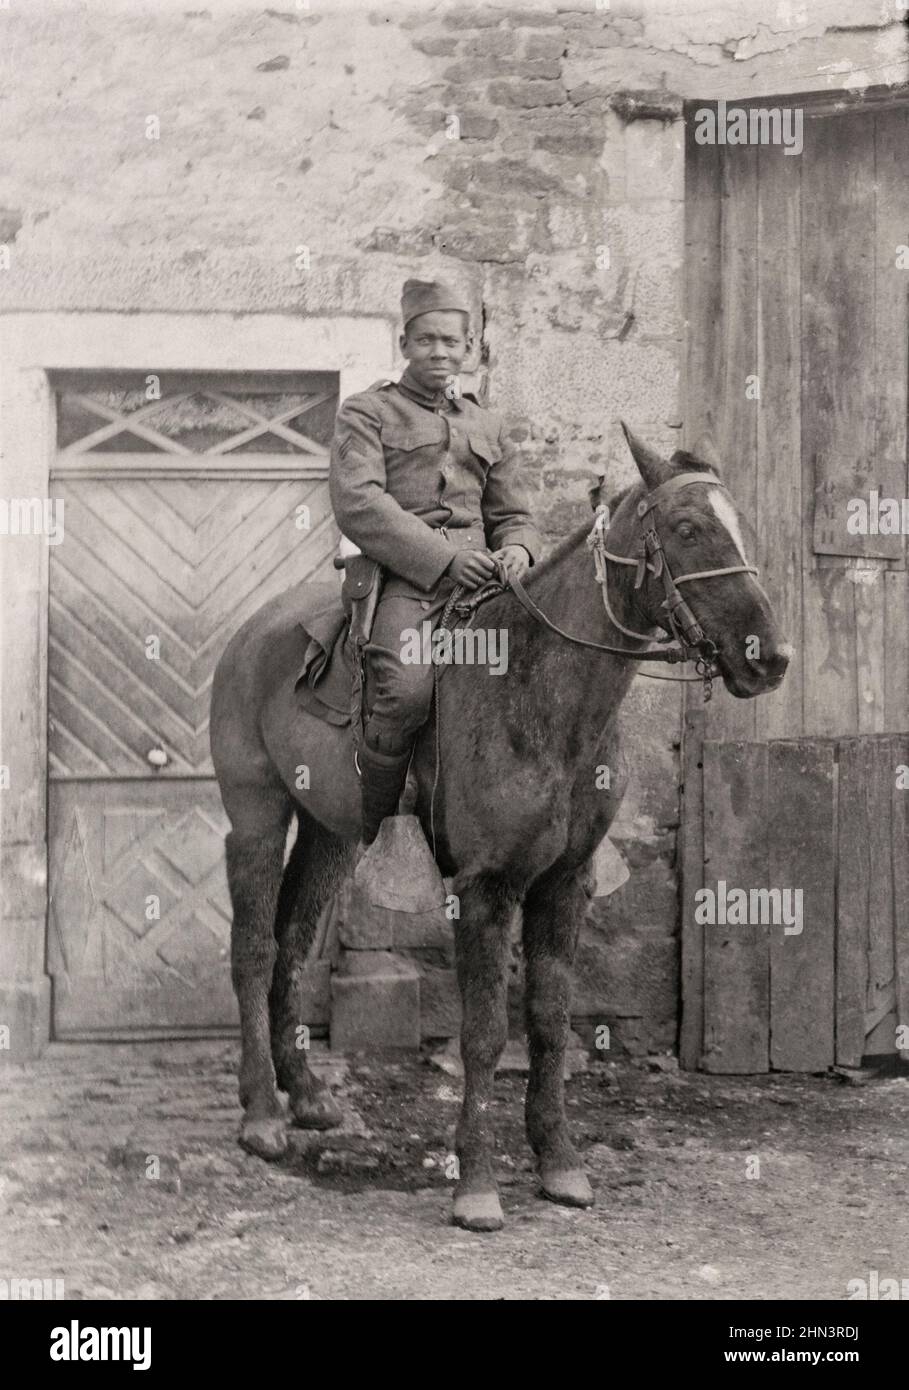 USA dans la première Guerre mondiale. Soldat africain américain en uniforme avec arme à main dans un étui à cheval. 1917-1918 Banque D'Images